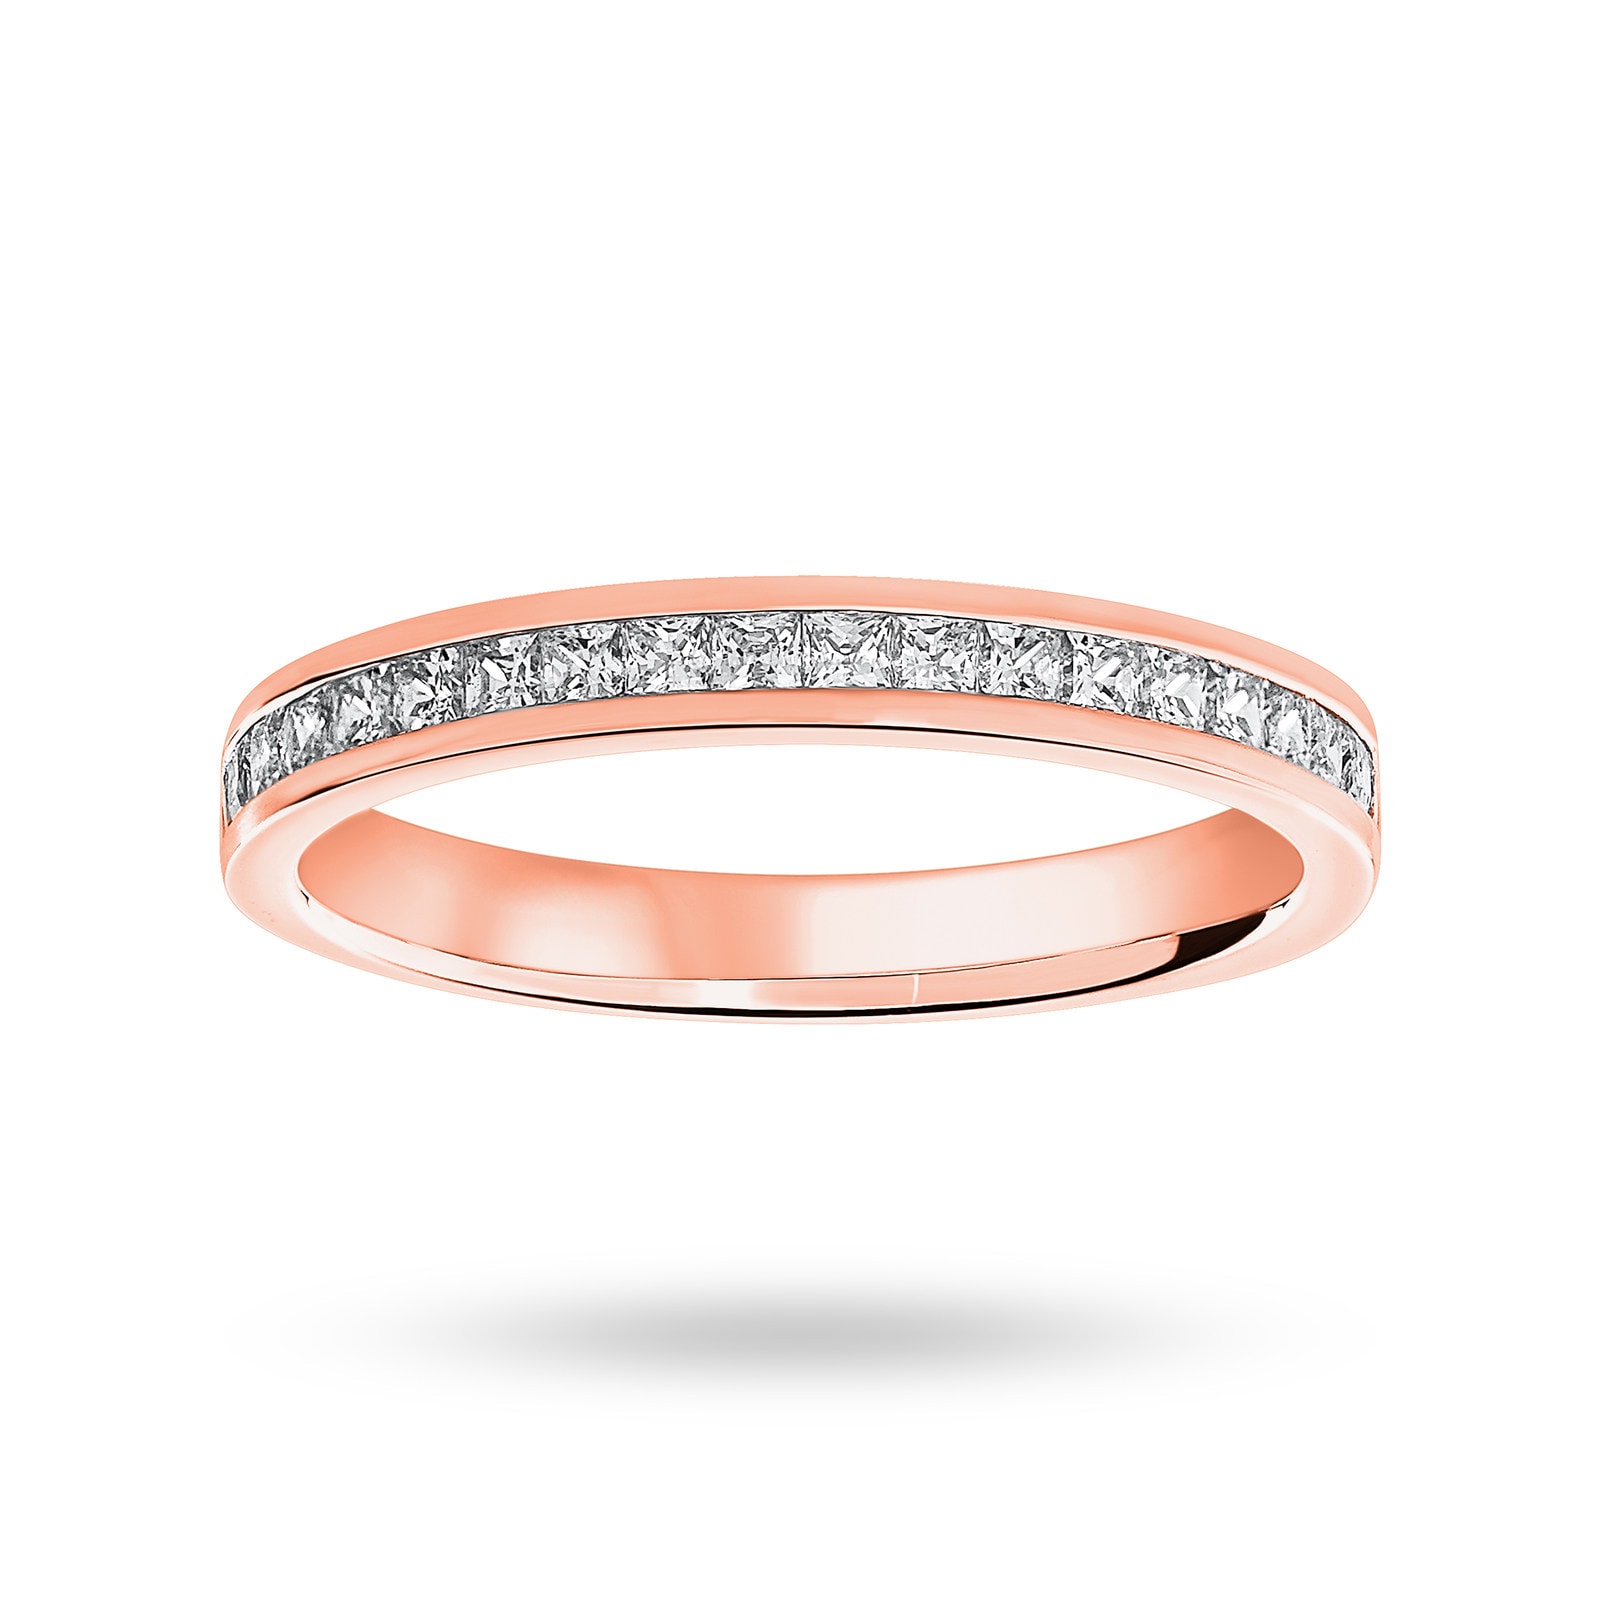 18 Carat Rose Gold 0.50 Carat Princess Cut Half Eternity Ring - Ring Size K